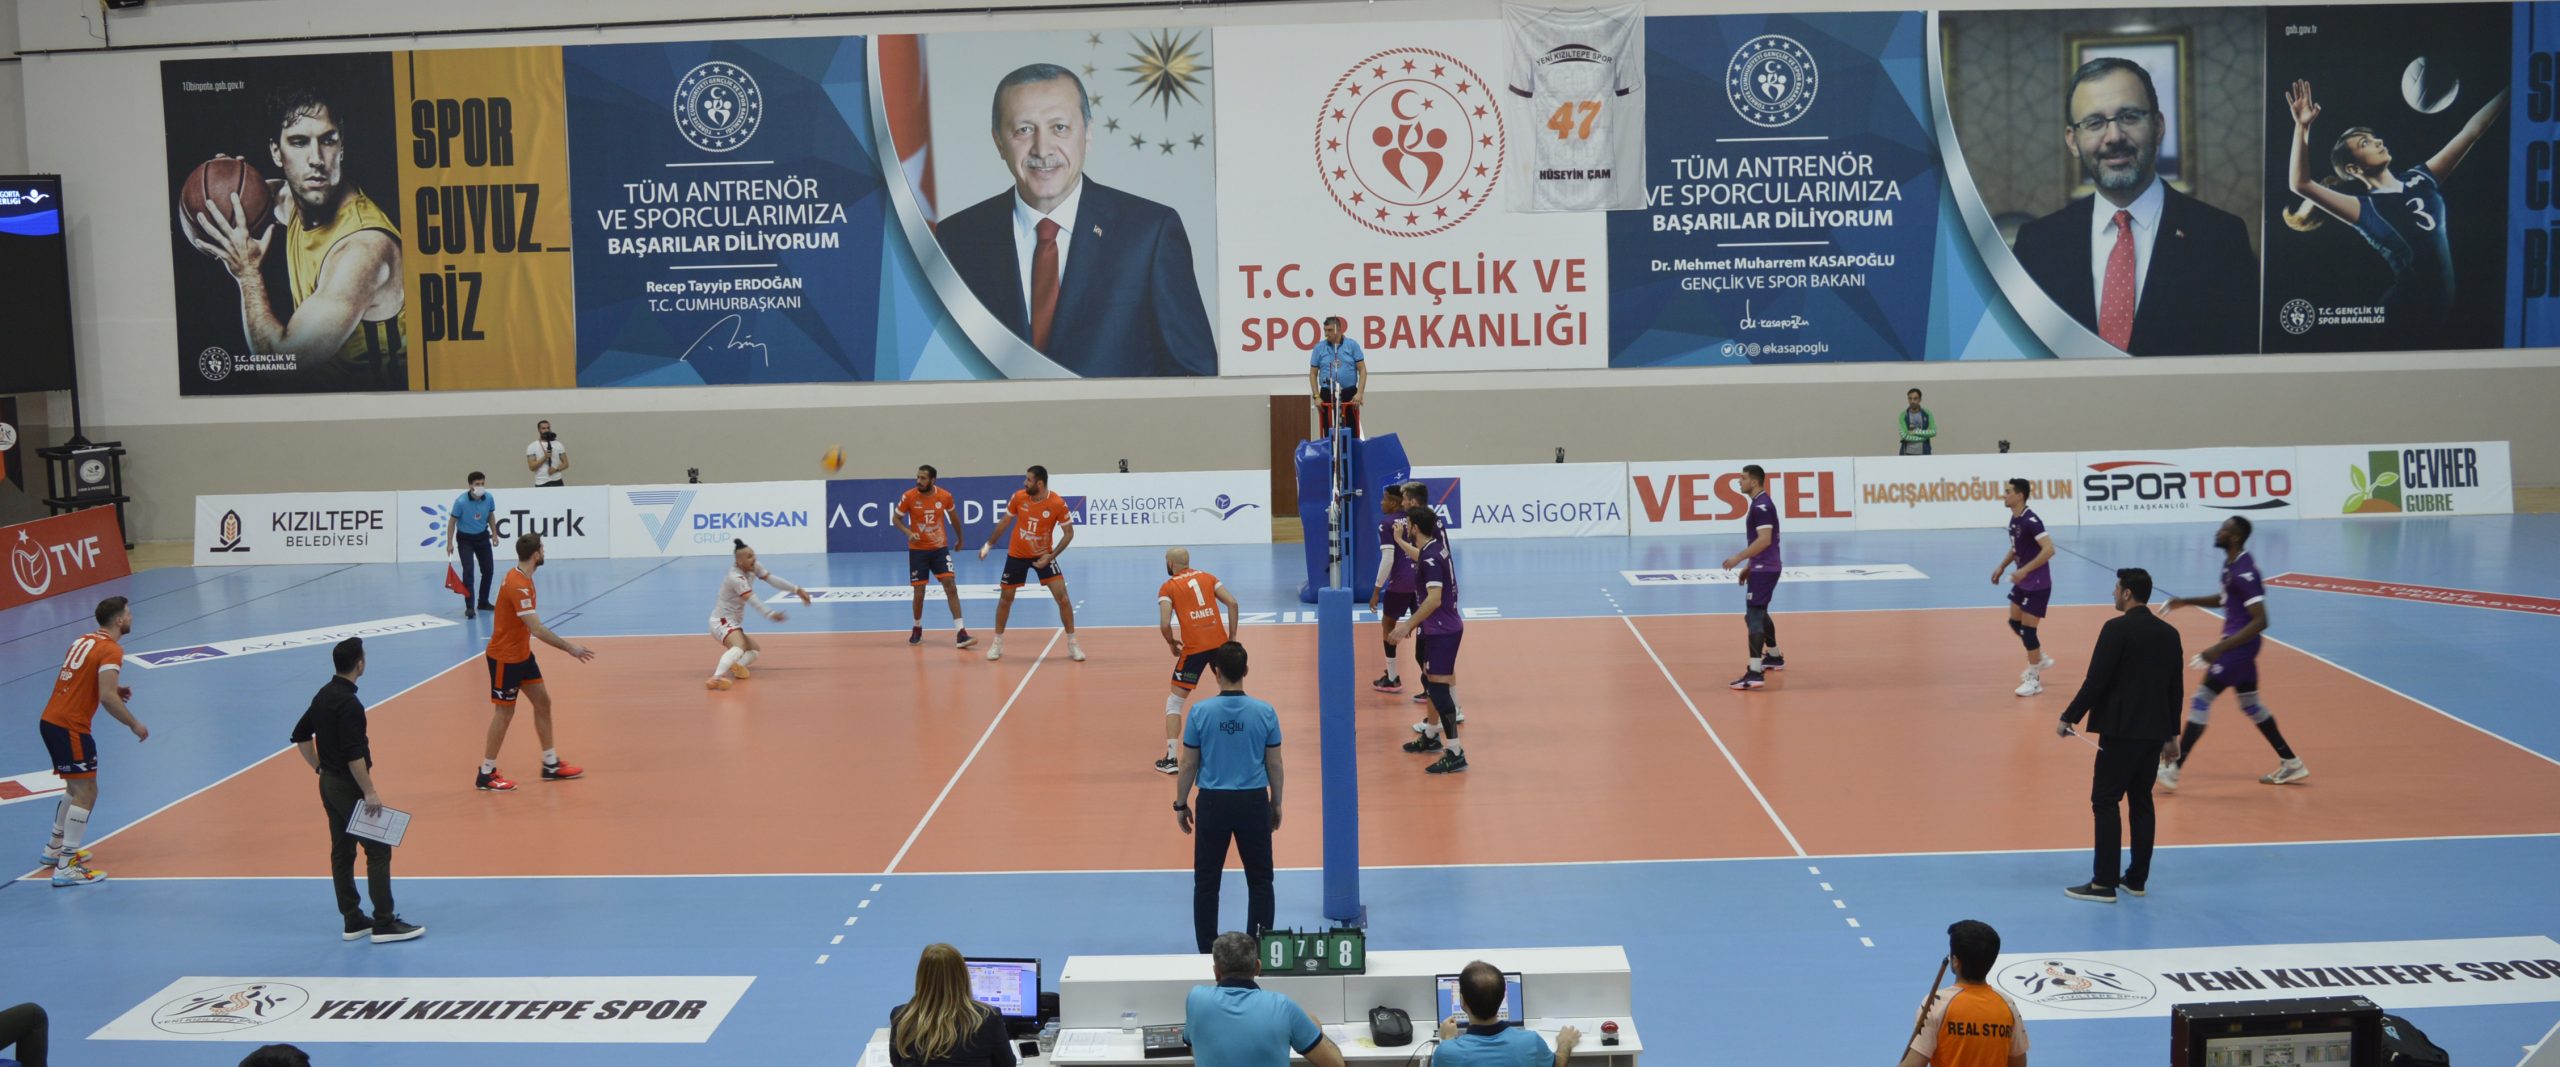 Mezopotamya’nın Efeleri Yeni Kızıltepe Spor, Afyon Belediye’ye set vermedi: 3-0